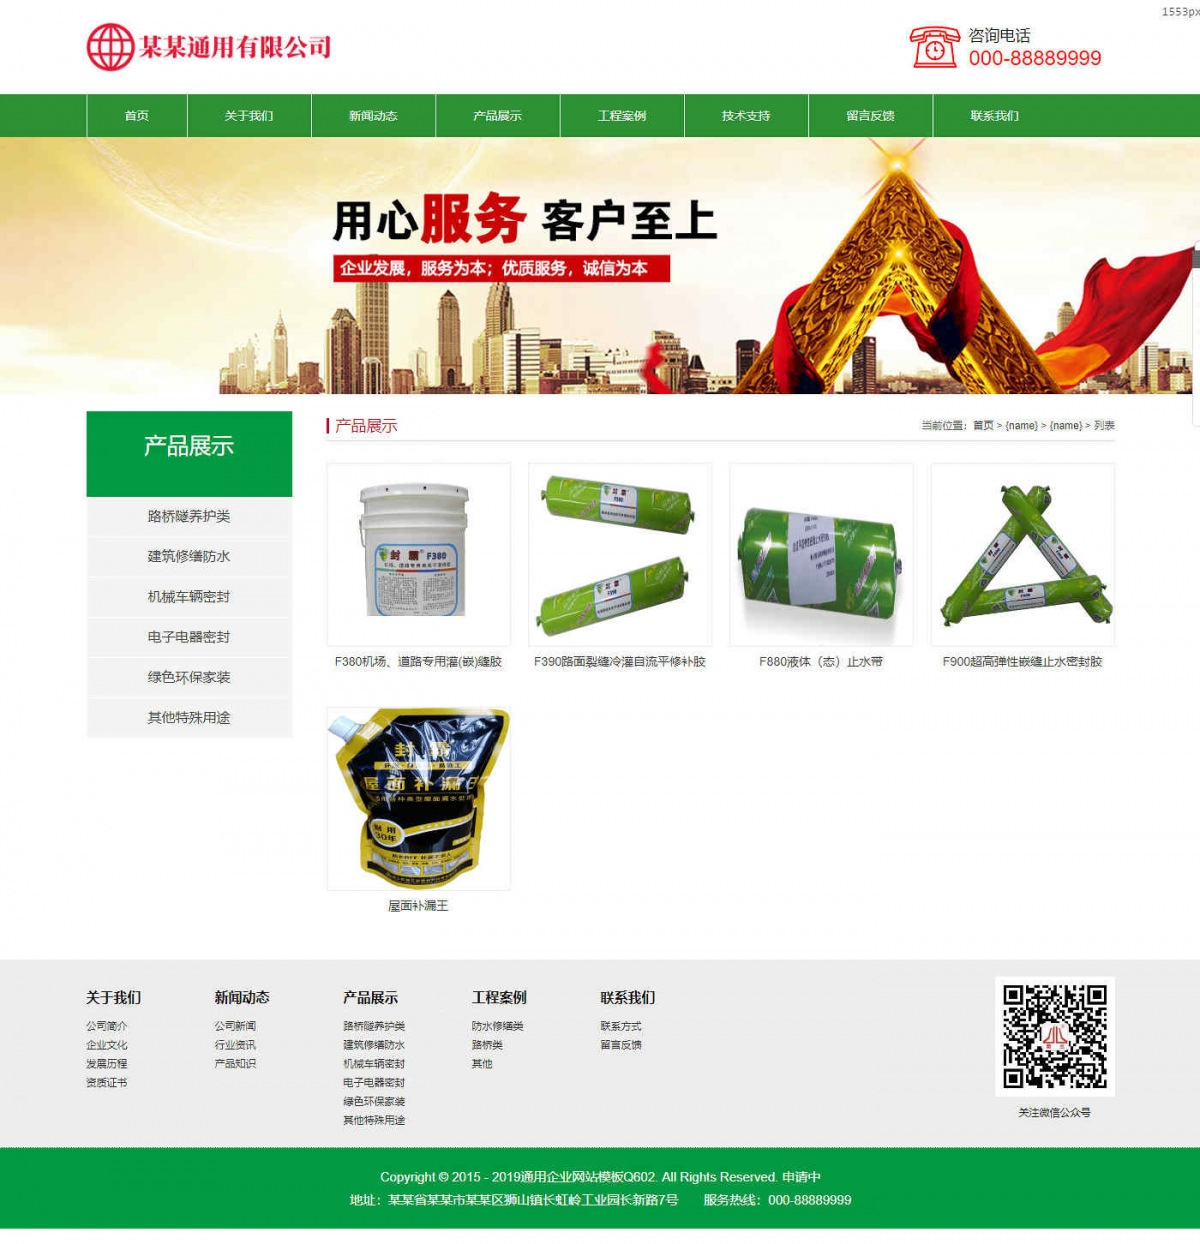 产品展示_产品_通用企业网站模板Q602-jpg